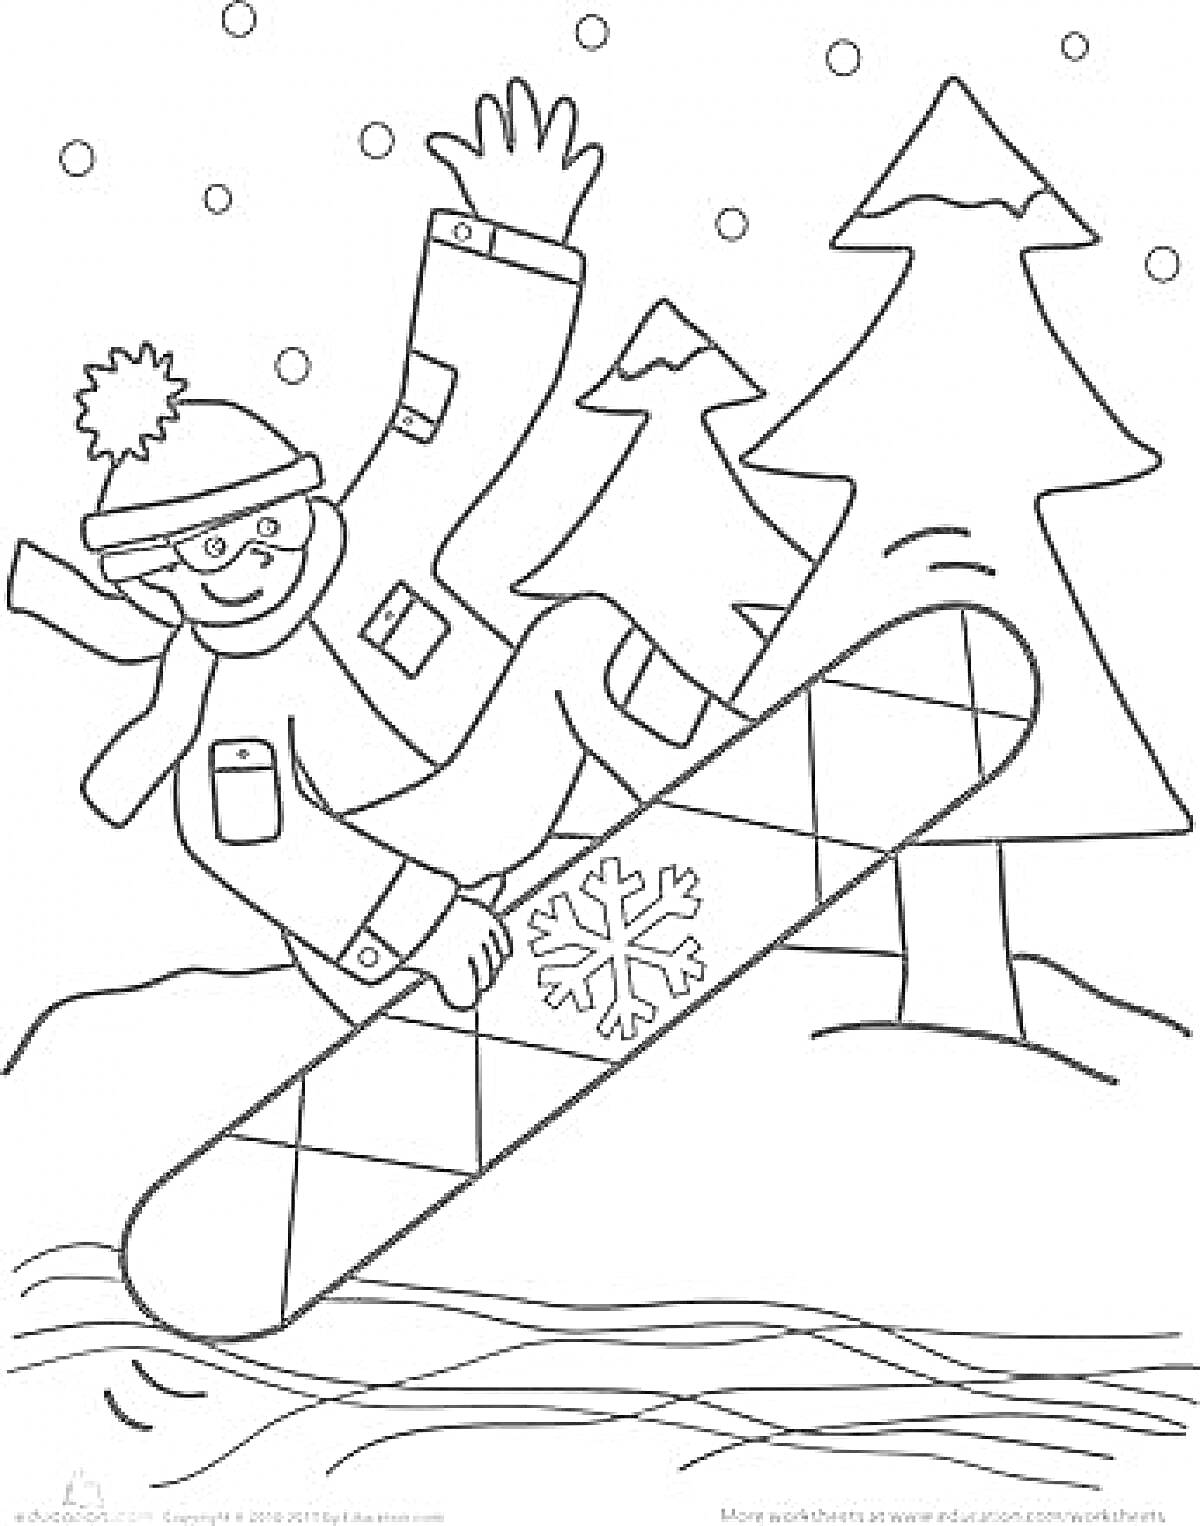 Ребенок на сноуборде среди снежных елок